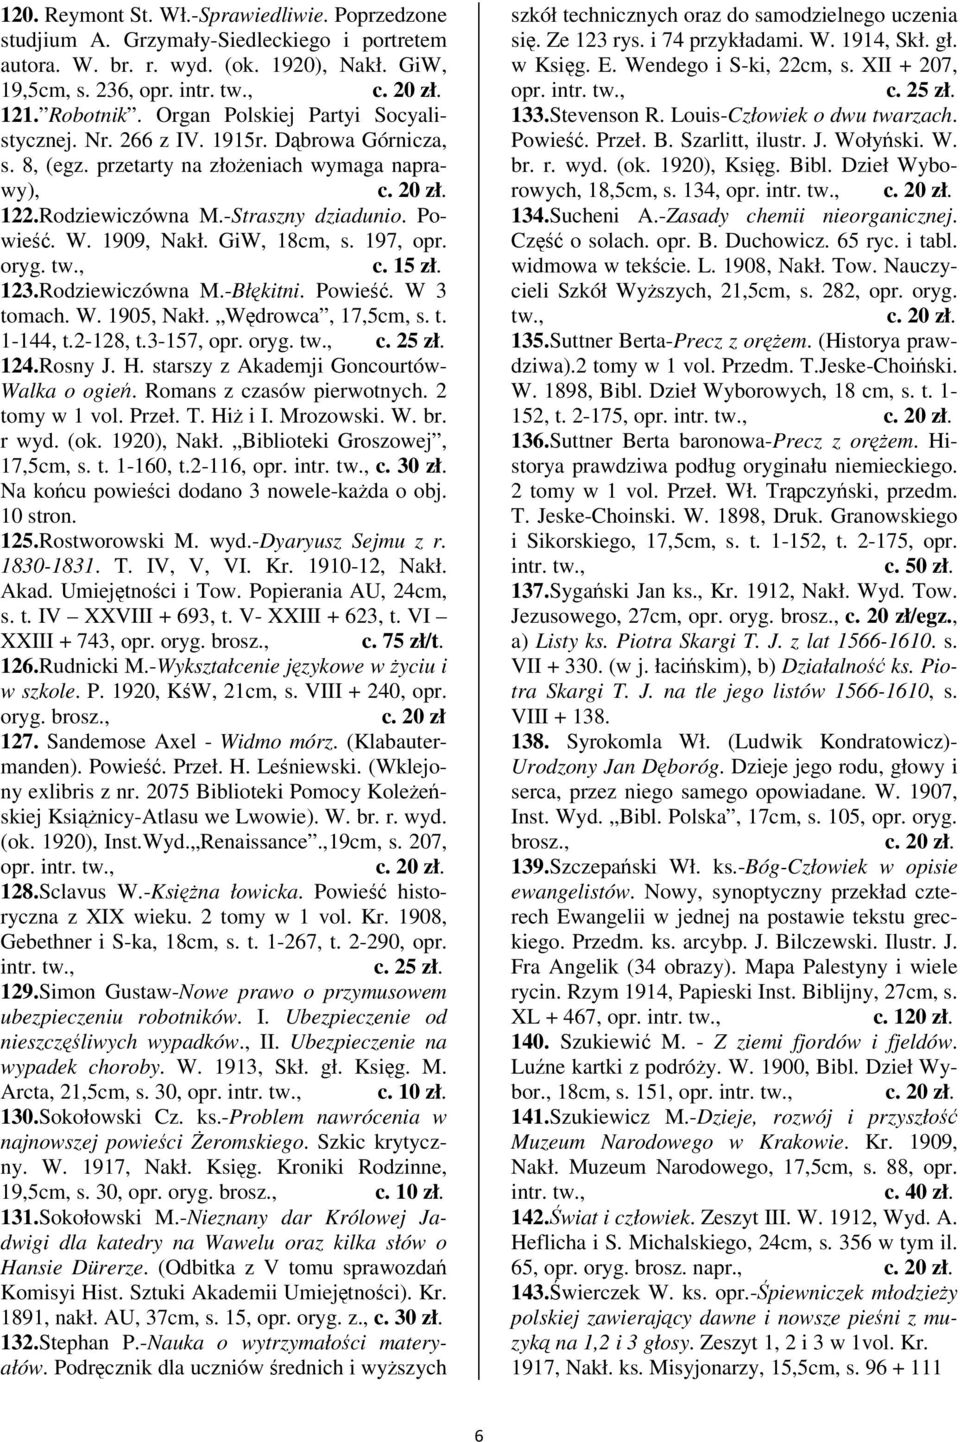 GiW, 18cm, s. 197, opr. oryg. 123.Rodziewiczówna M.-Błkitni. Powie. W 3 tomach. W. 1905, Nakł. Wdrowca, 17,5cm, s. t. 1-144, t.2-128, t.3-157, opr. oryg. 124.Rosny J. H.